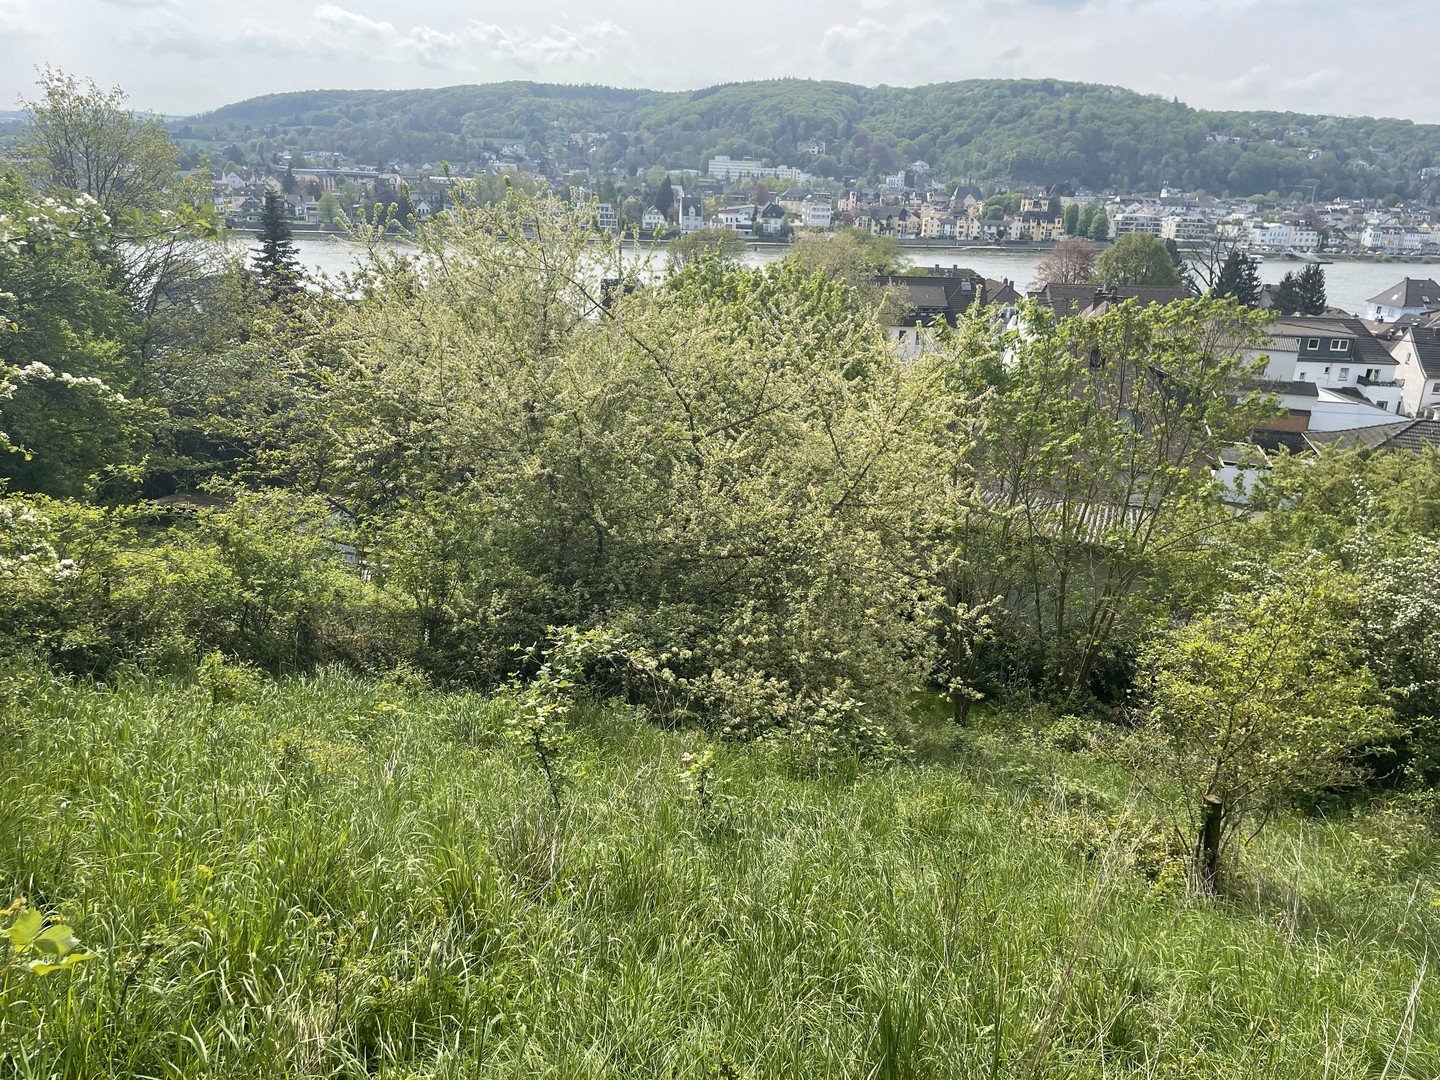 Verlockendes Angebot: Traumgrundstück mit Panoramablick auf den Rhein